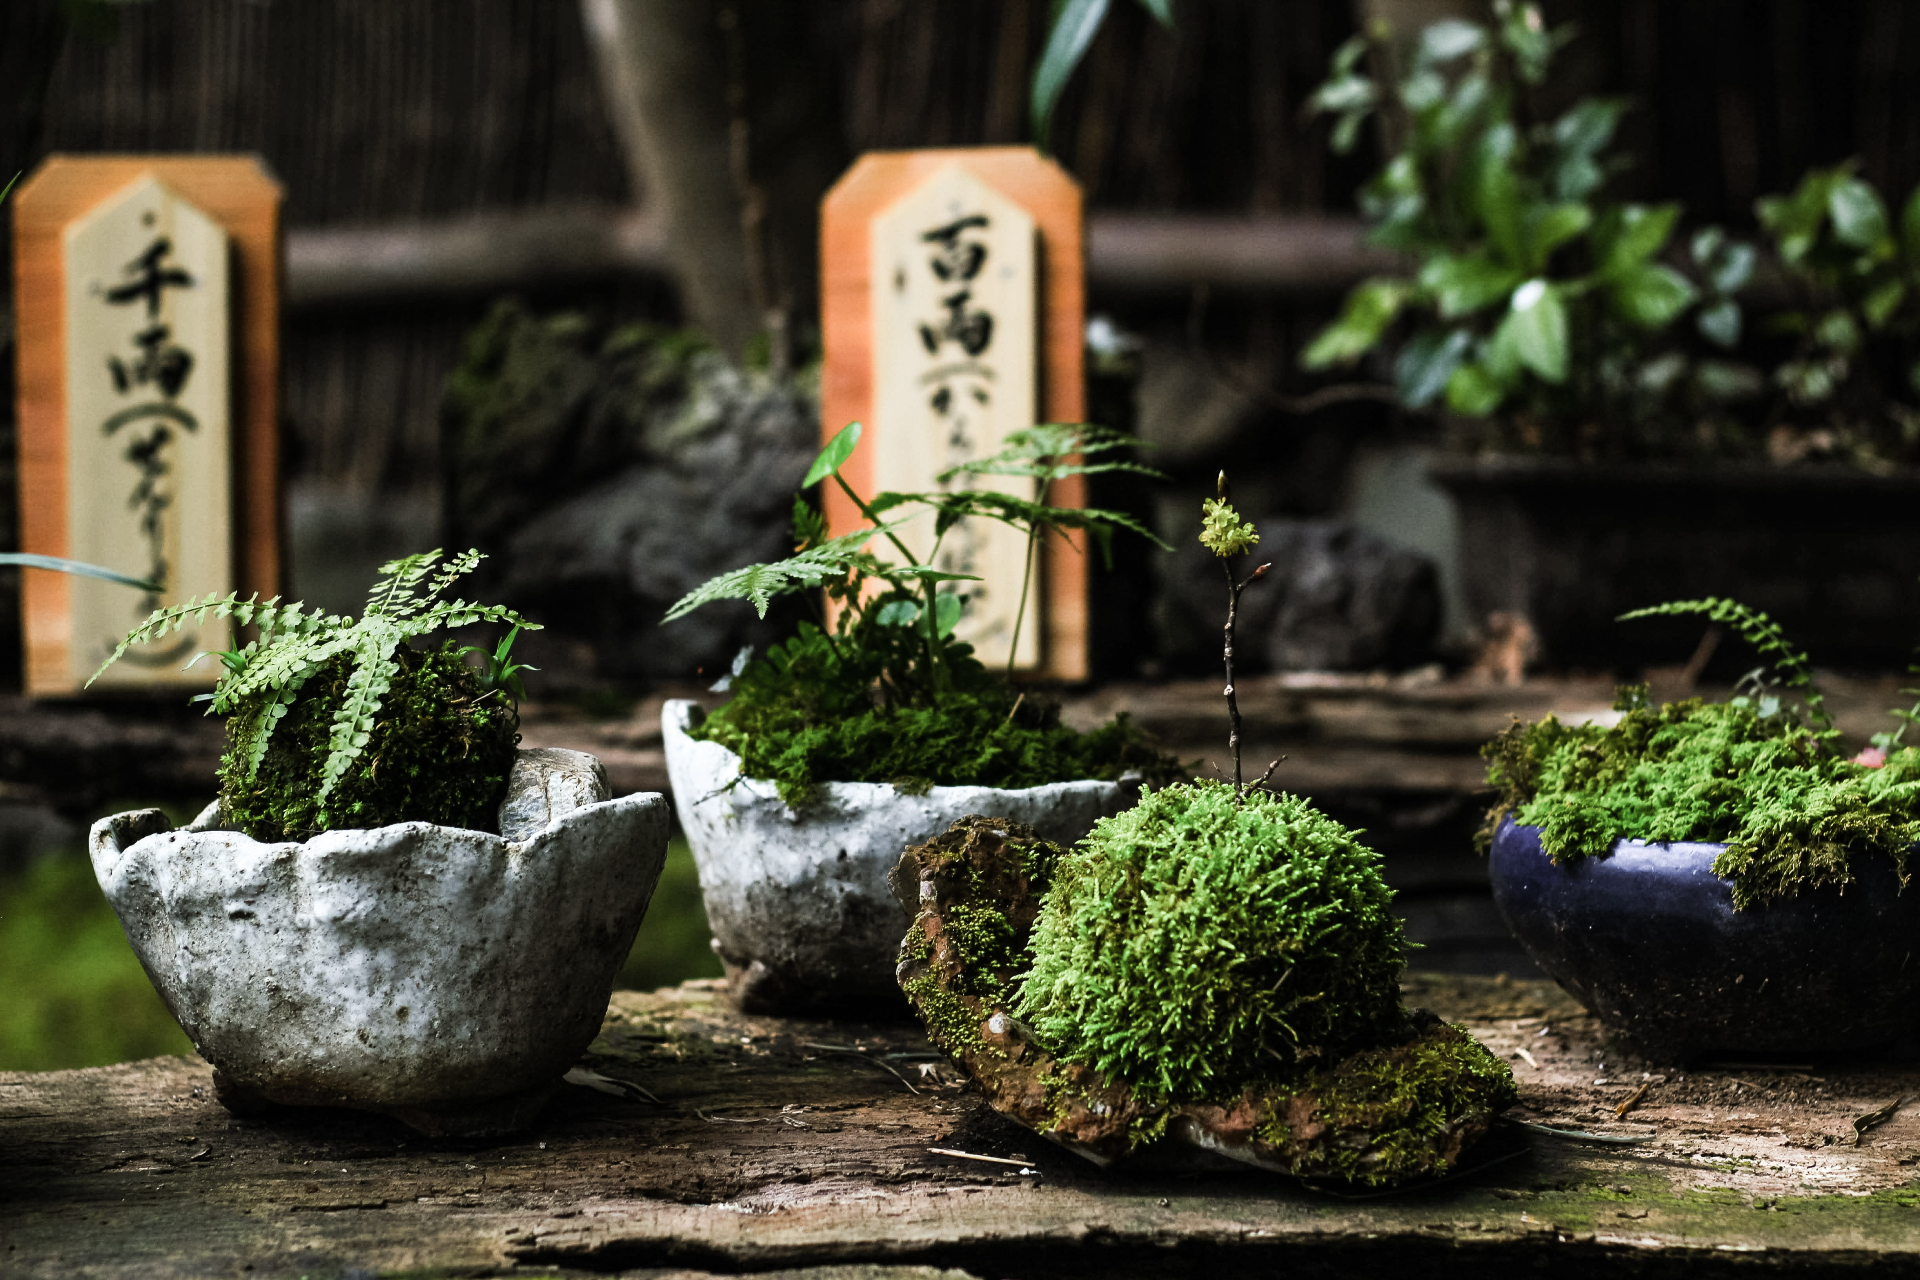 Японцы применяют принцип помещения большого в малом &mdash; карликовые растения заменяют большие кусты и деревья, а миниатюрные водоемы и композиции из камней символизируют озера и скалы